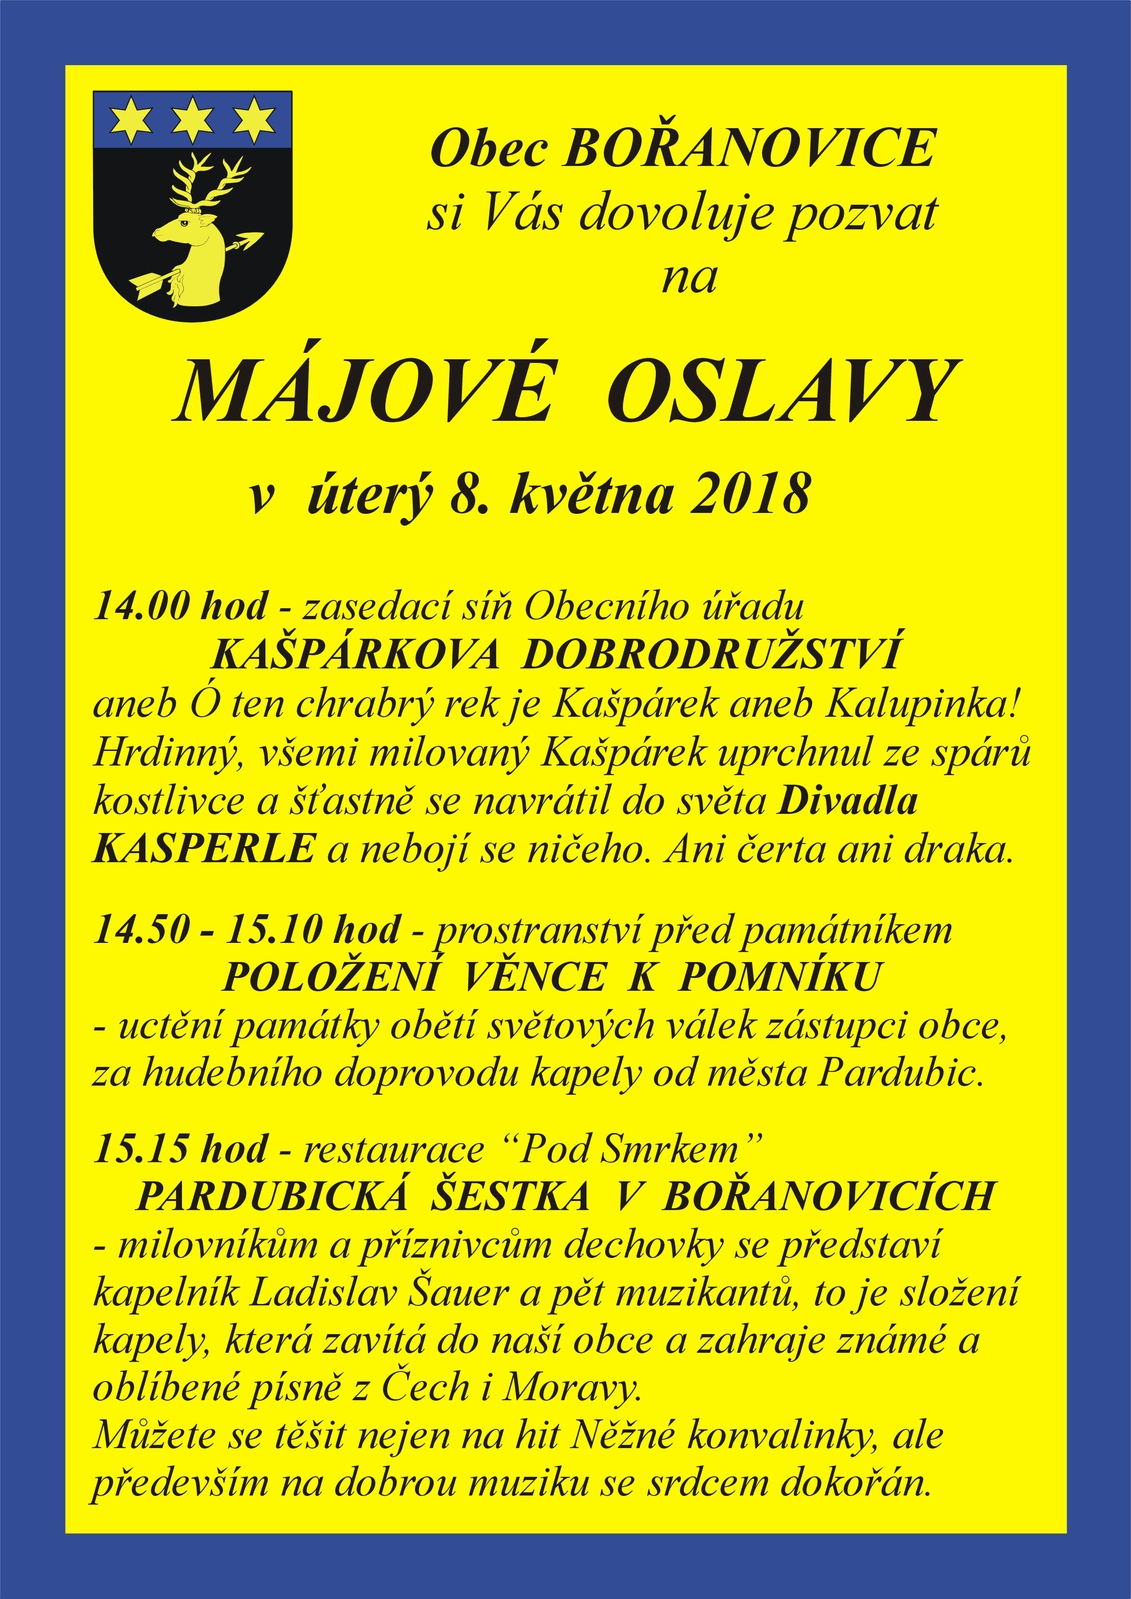 Plakát Bořanovice - Májové oslavy 2018.jpg